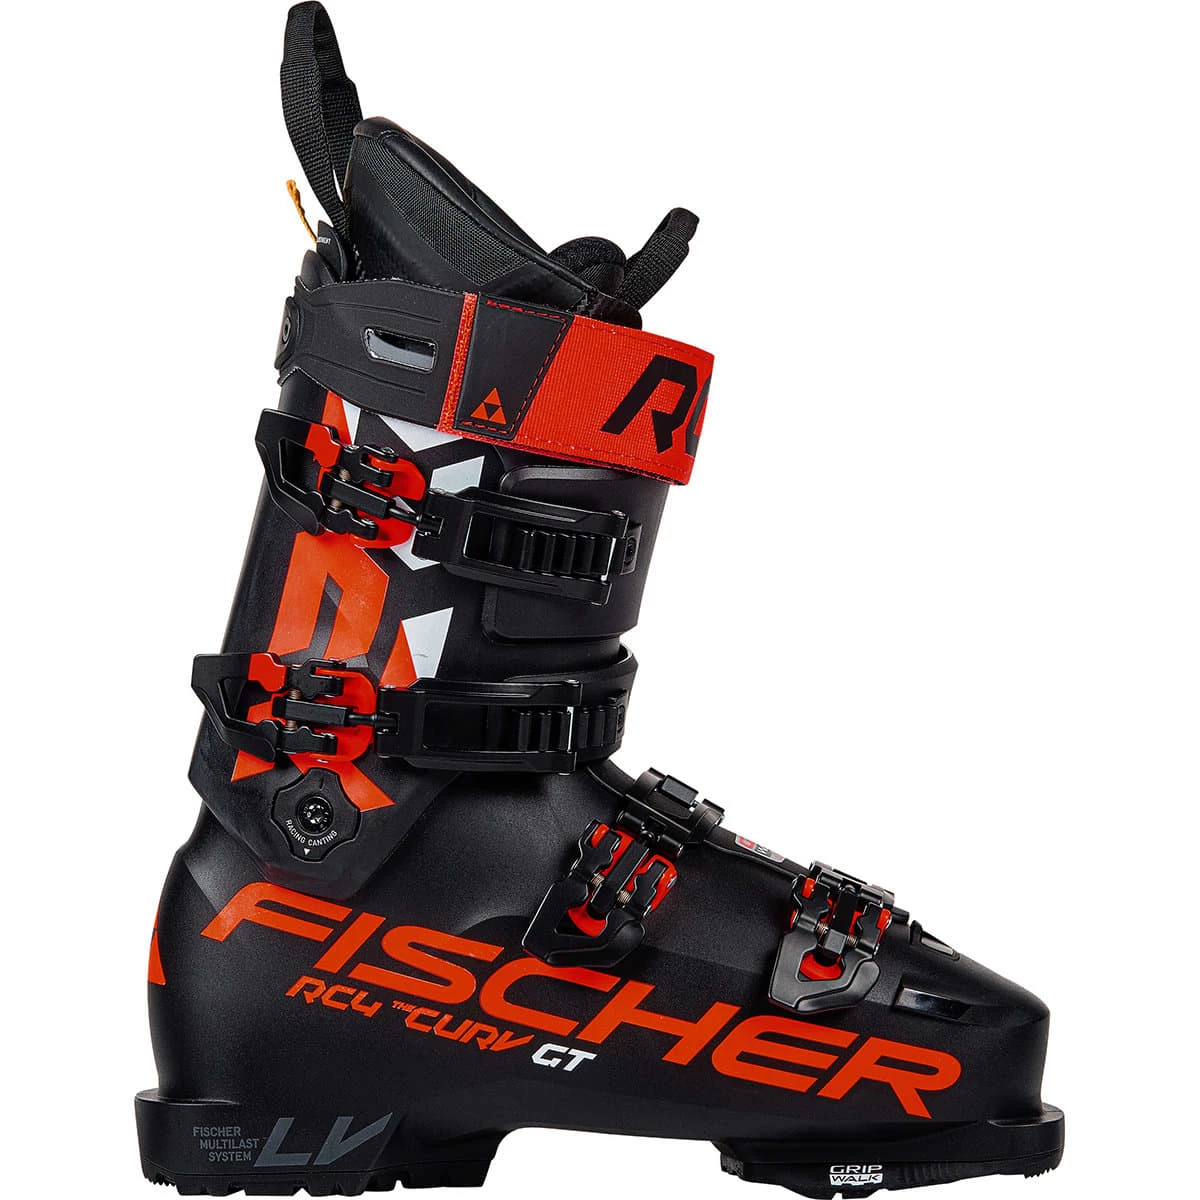 Fischer RC 4 The Curv GT 120 skischoenen he